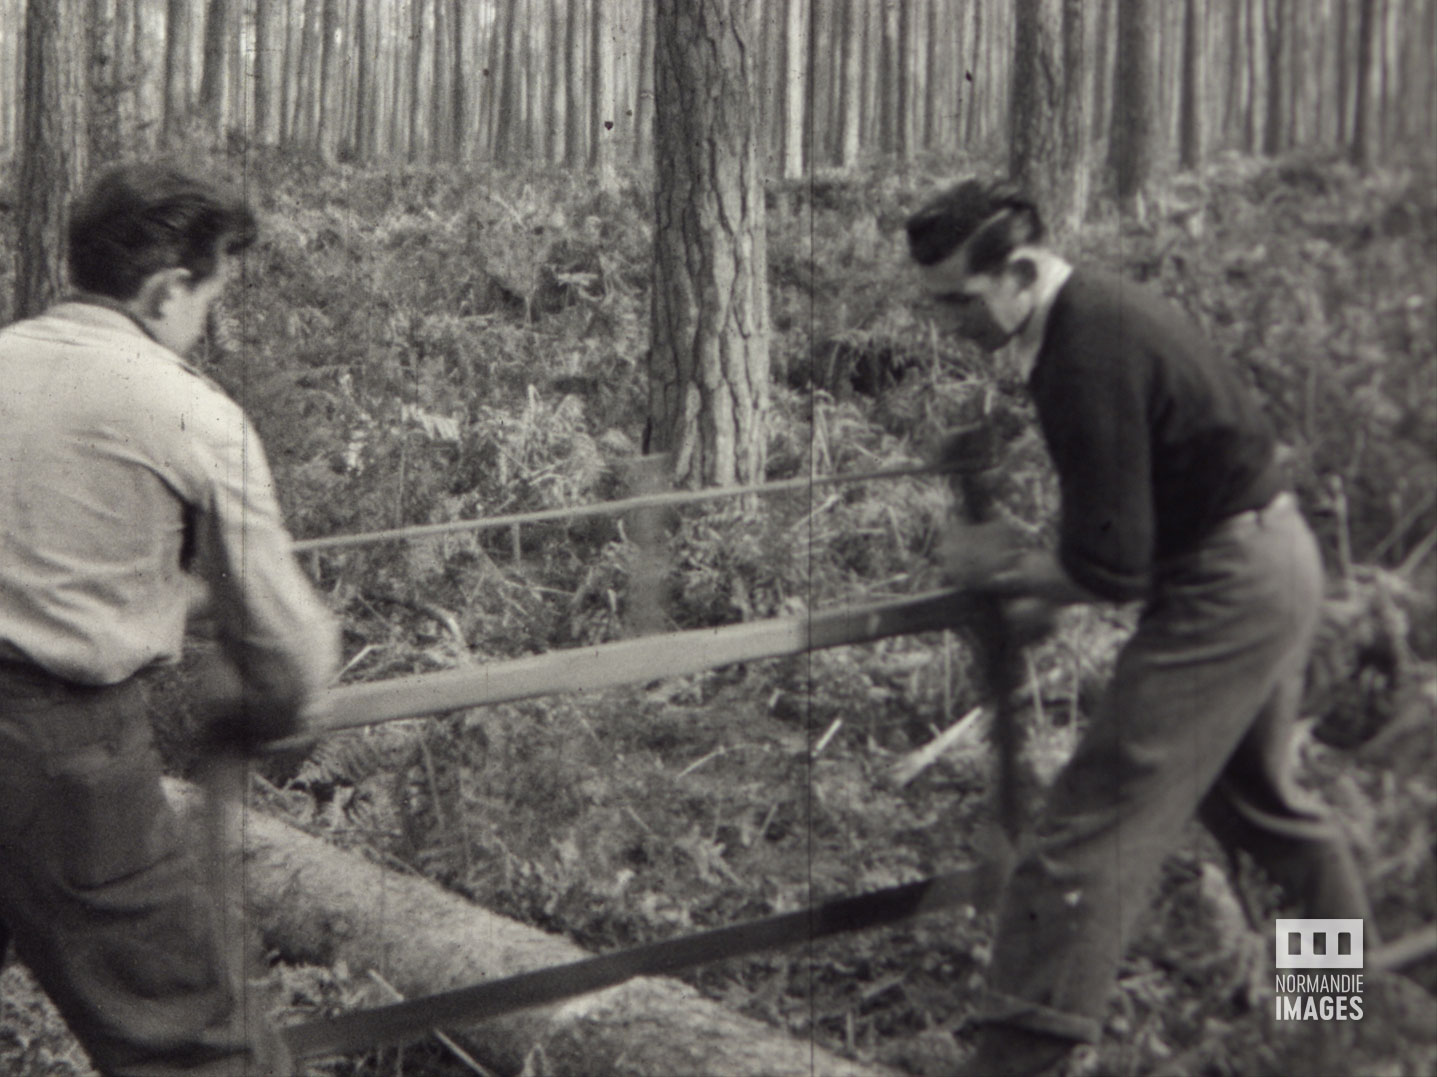 Photogramme extrait du film amateur Travaux en forêt de Guy Robert, 1946, 16mm © Normandie Images